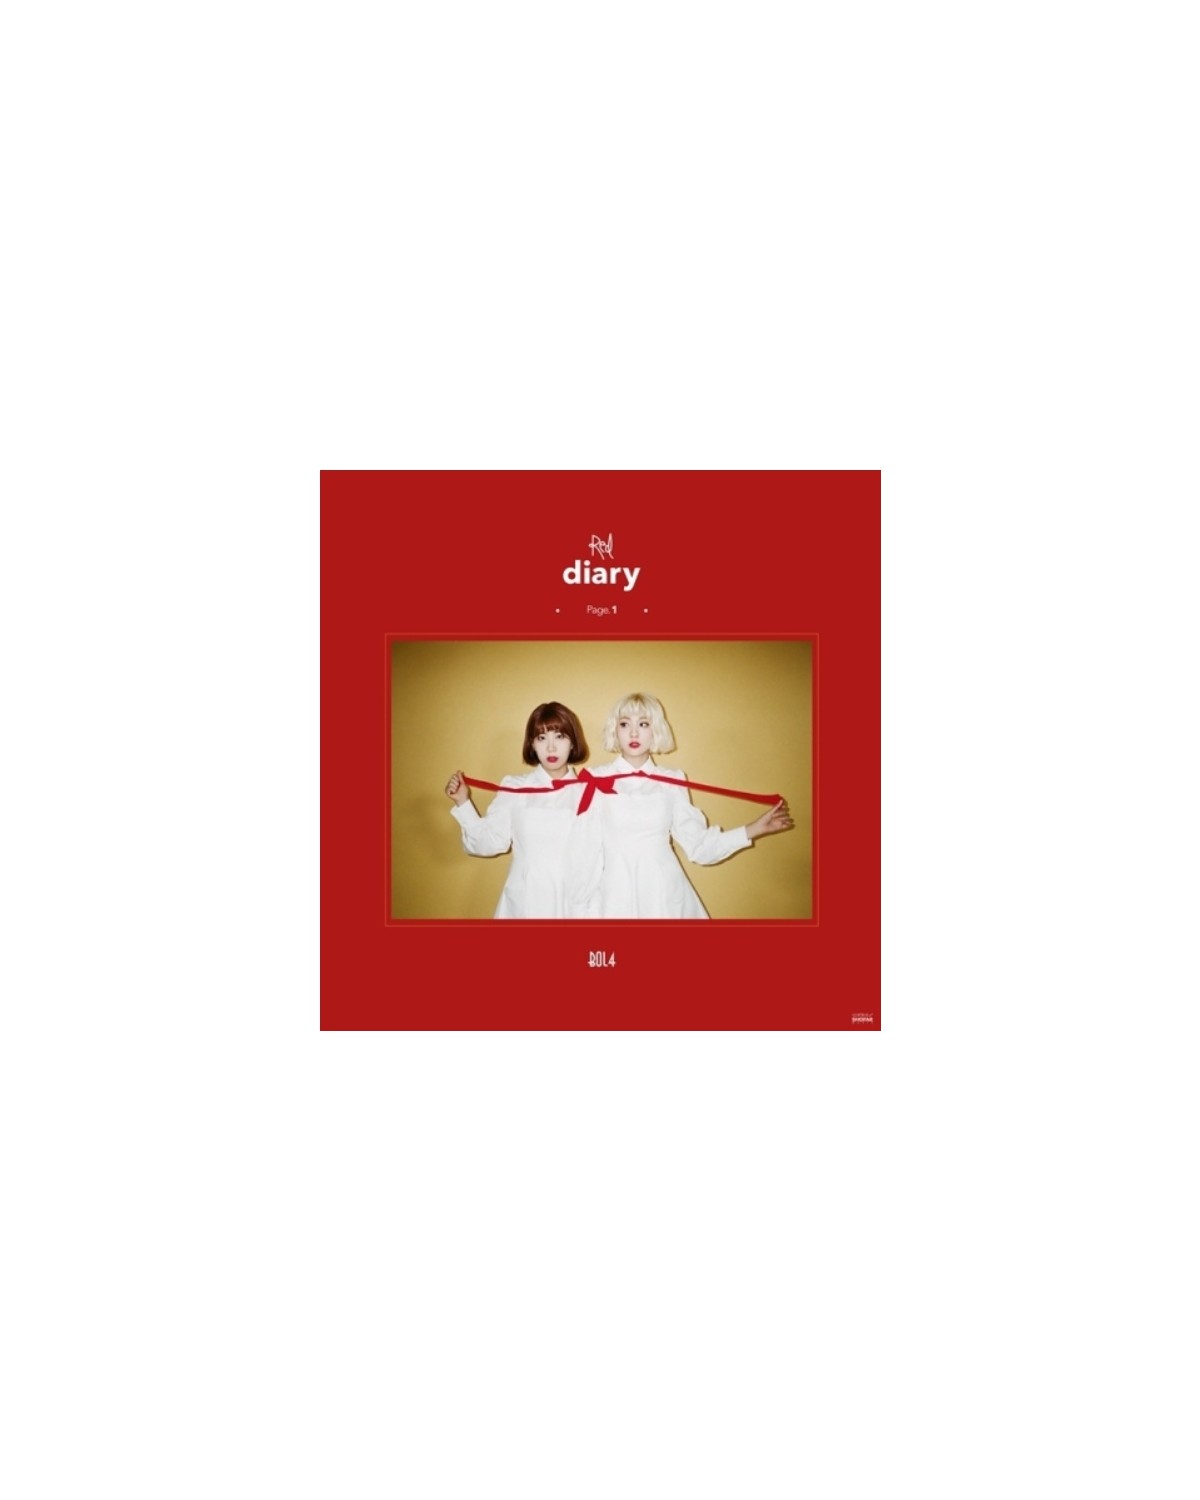 BOLBBALGAN4 - RED DIARY PAGE.1 (MINI ALBUM)
album płyta kpop sklep stacjonarny poznań